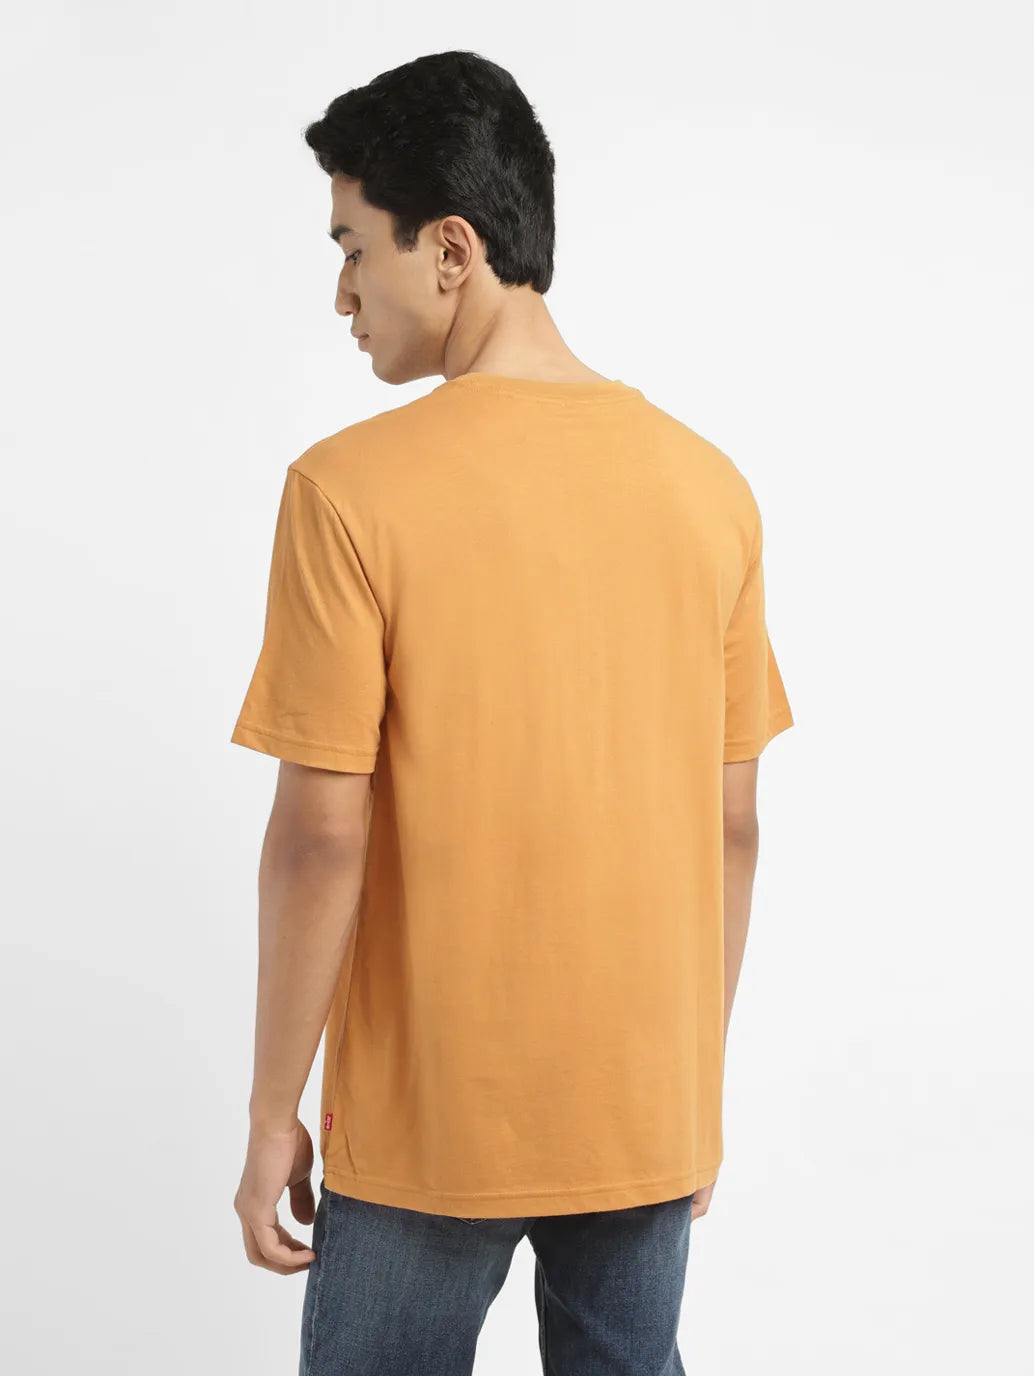 Men's Solid Round Neck T-shirt